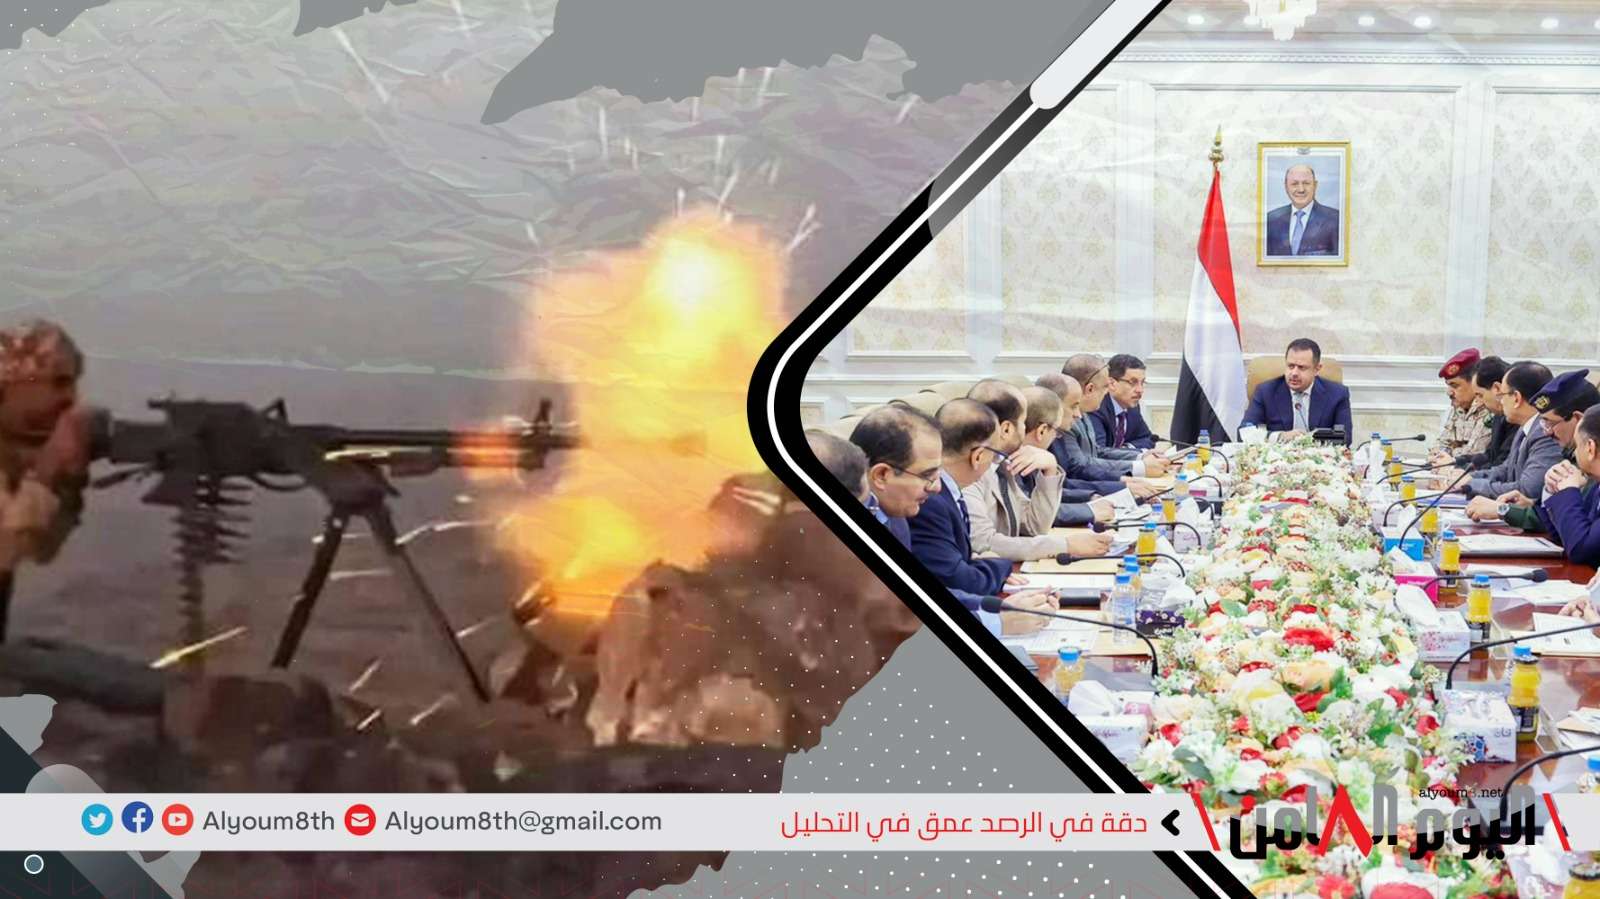 الأذرع الإيرانية في اليمن تكثف هجماتها على الجنوب وساسة سعوديون يهددون عدن